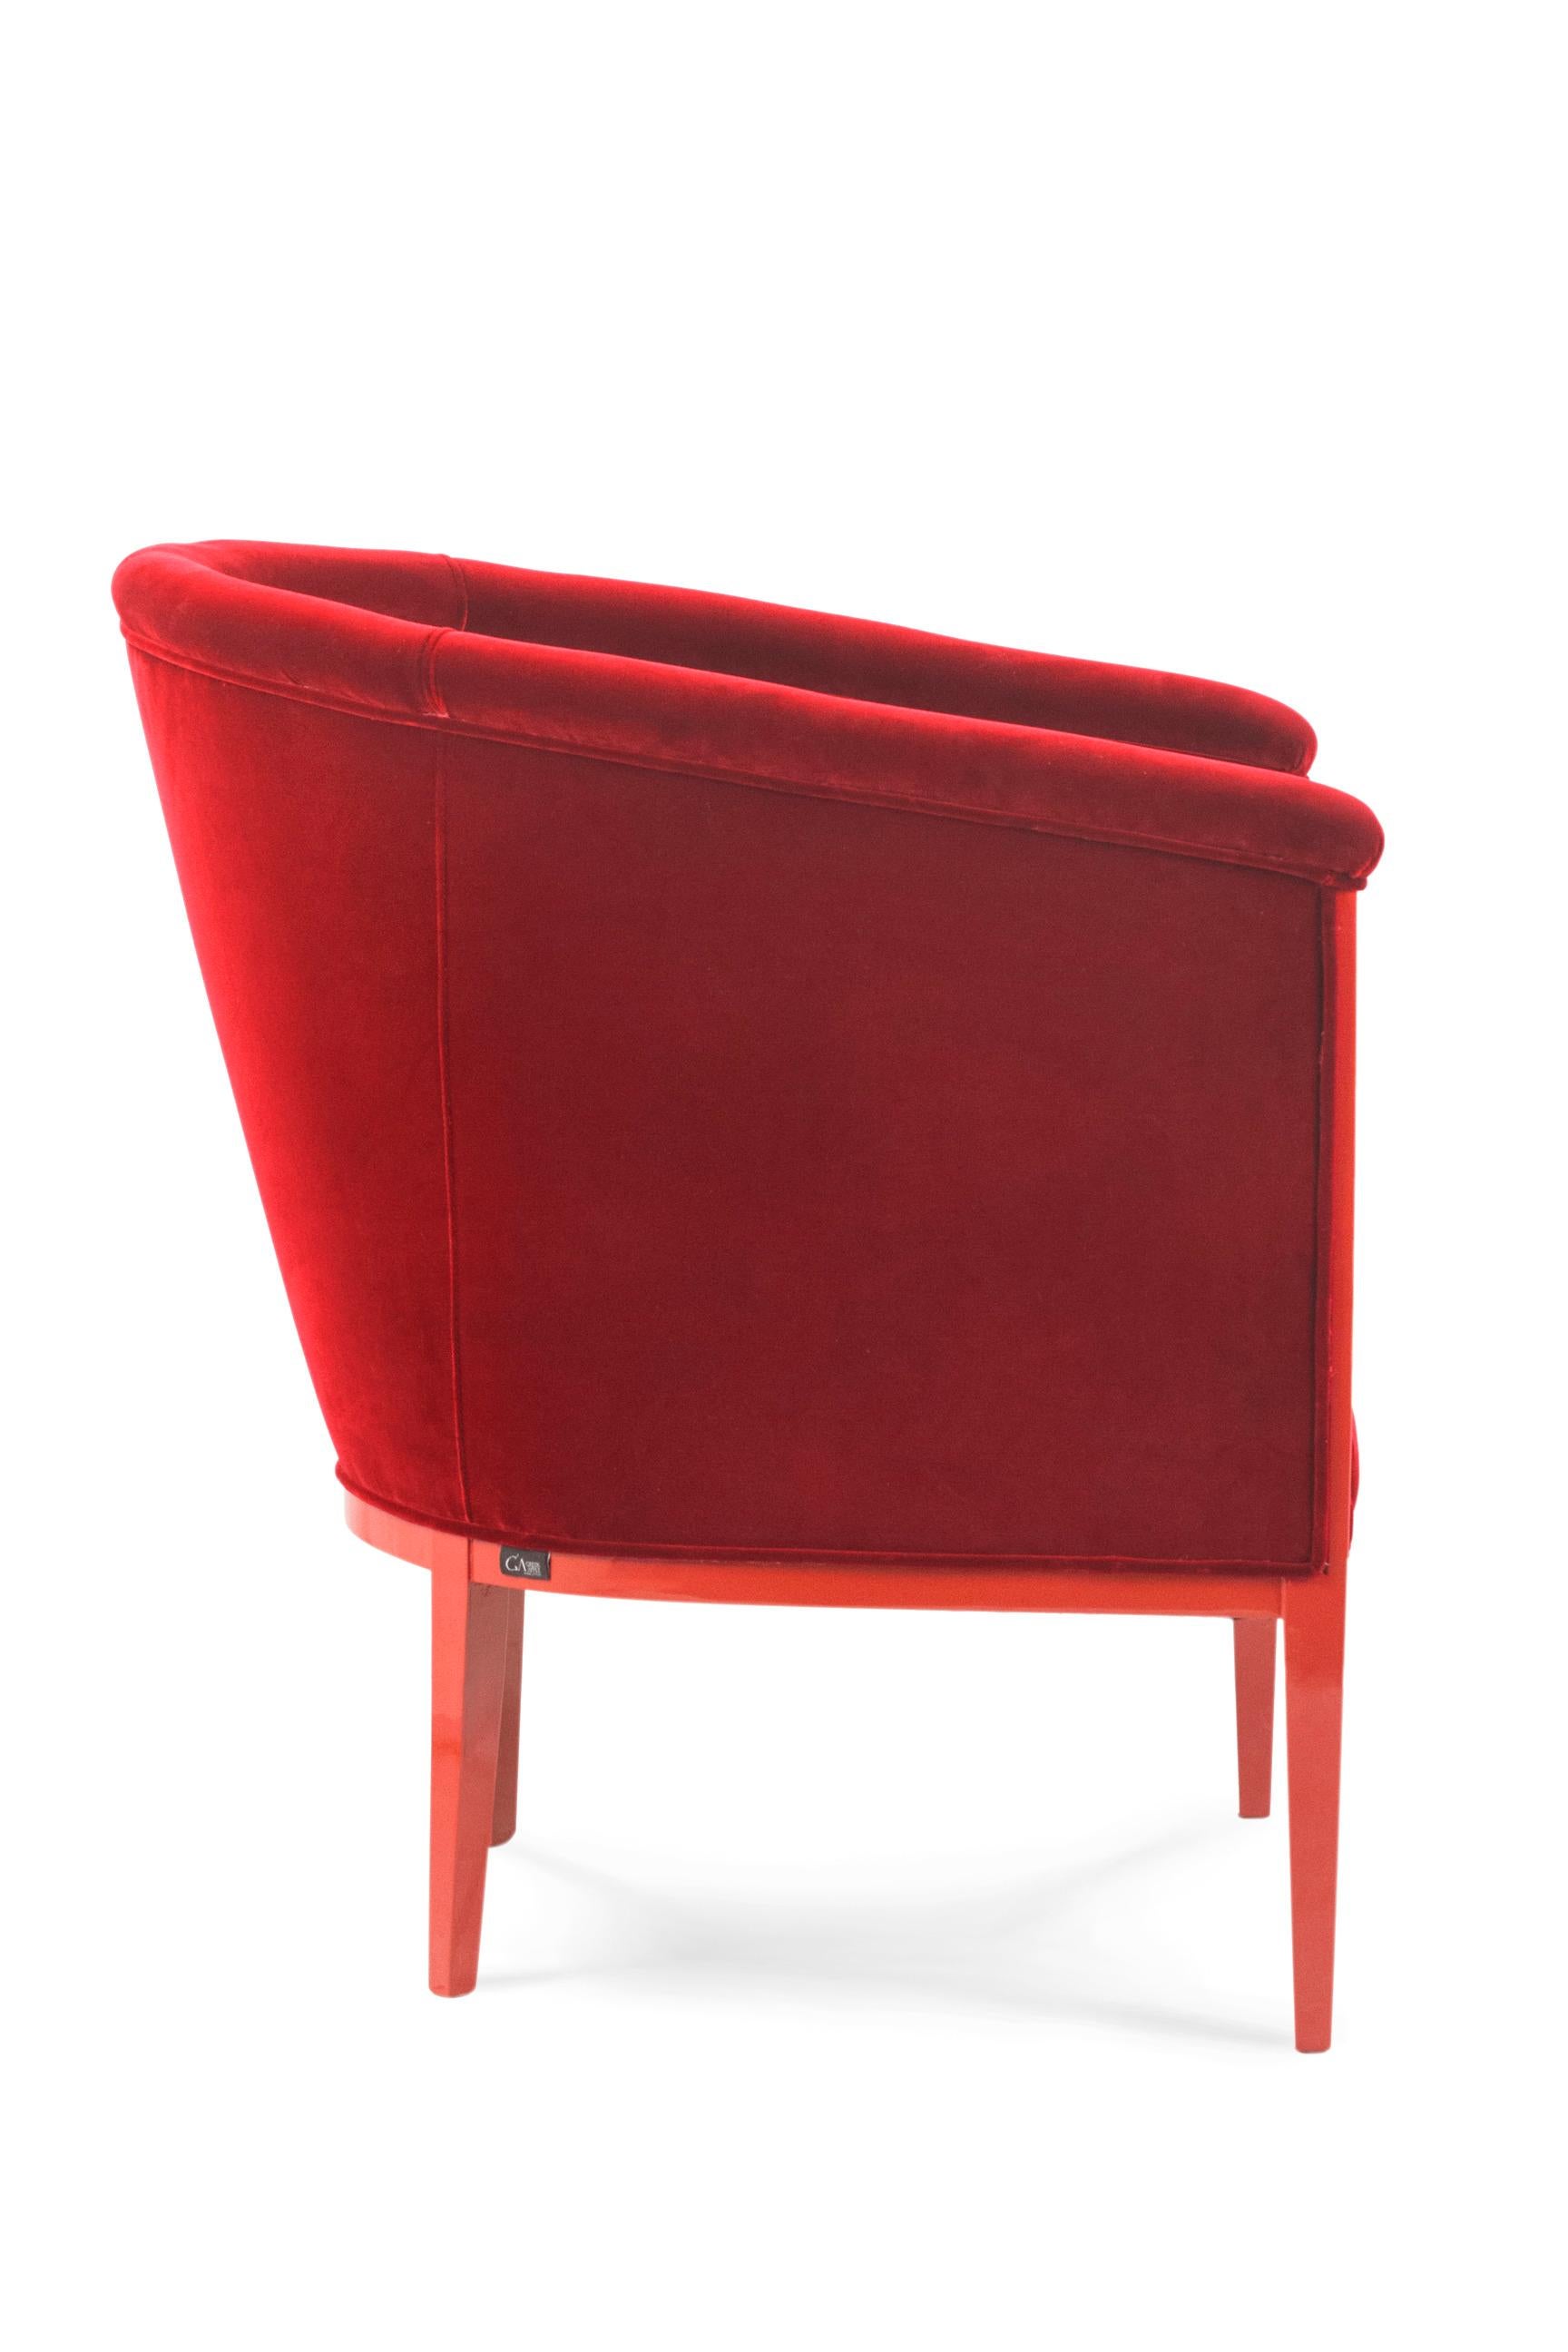 Portuguese Art Deco Scarlet Armchair DEDAR Red Cotton Velvet Handmade Portugal Greenapple For Sale